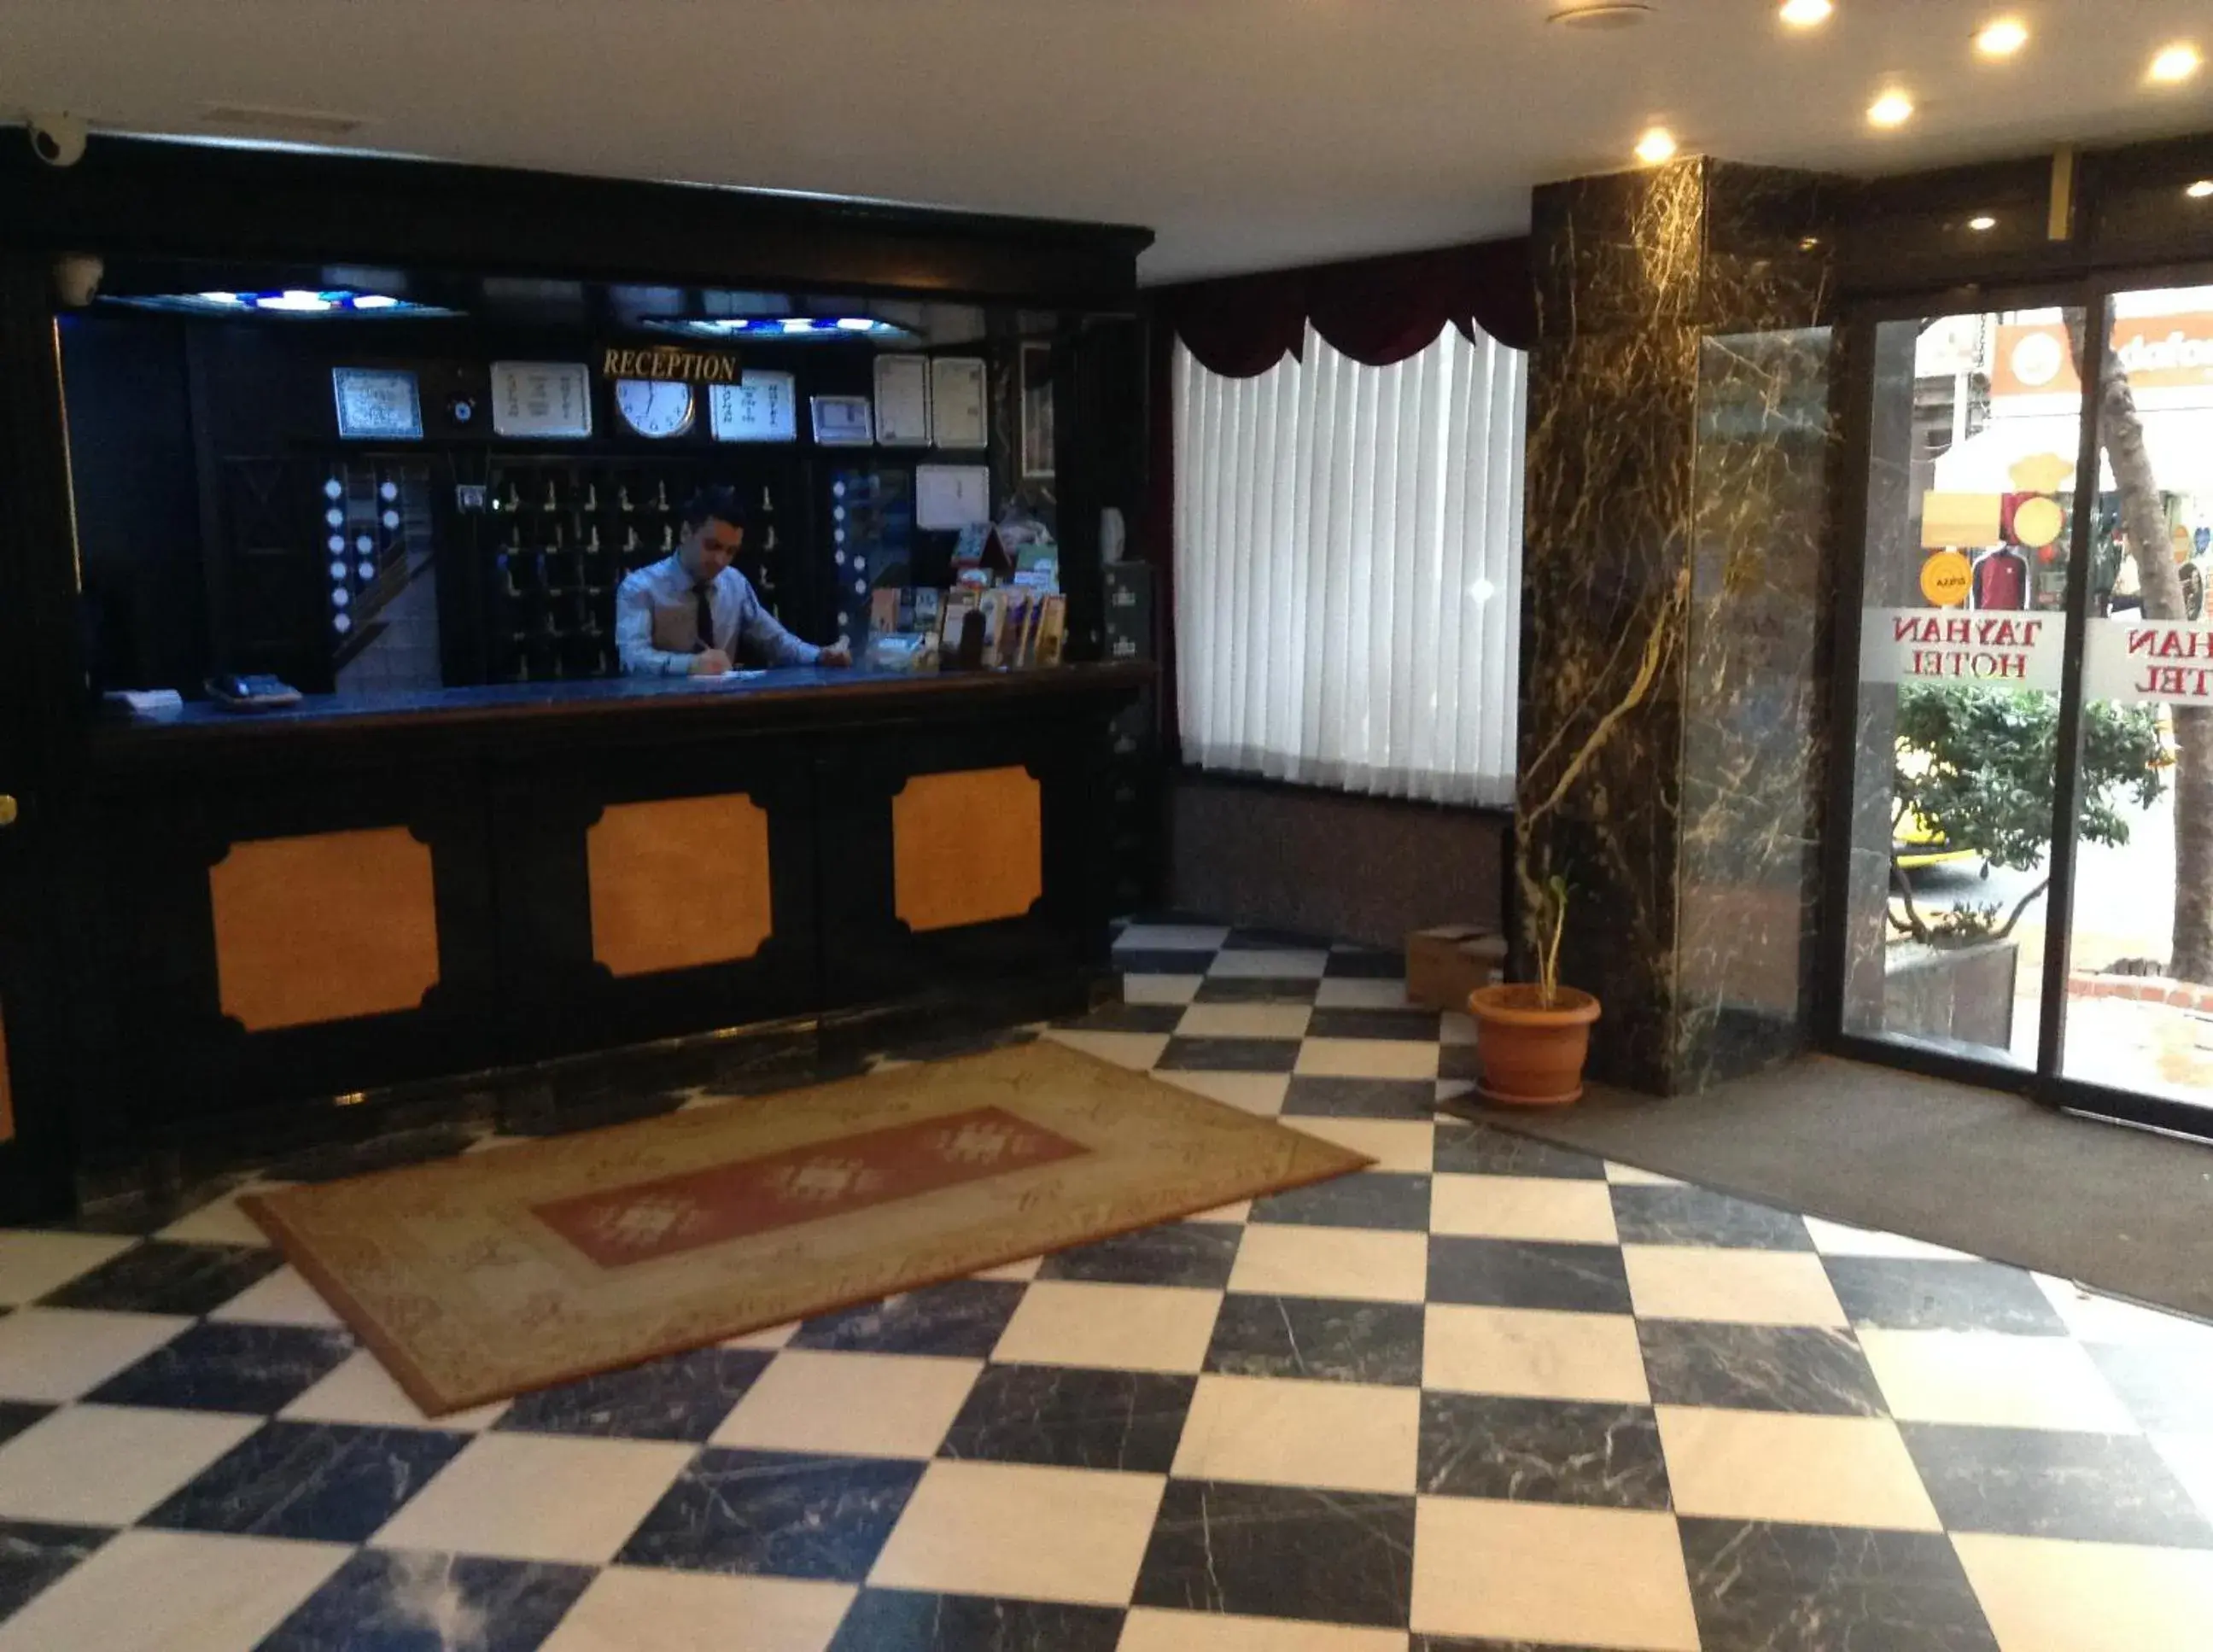 Lobby or reception, Lobby/Reception in Tayhan Hotel